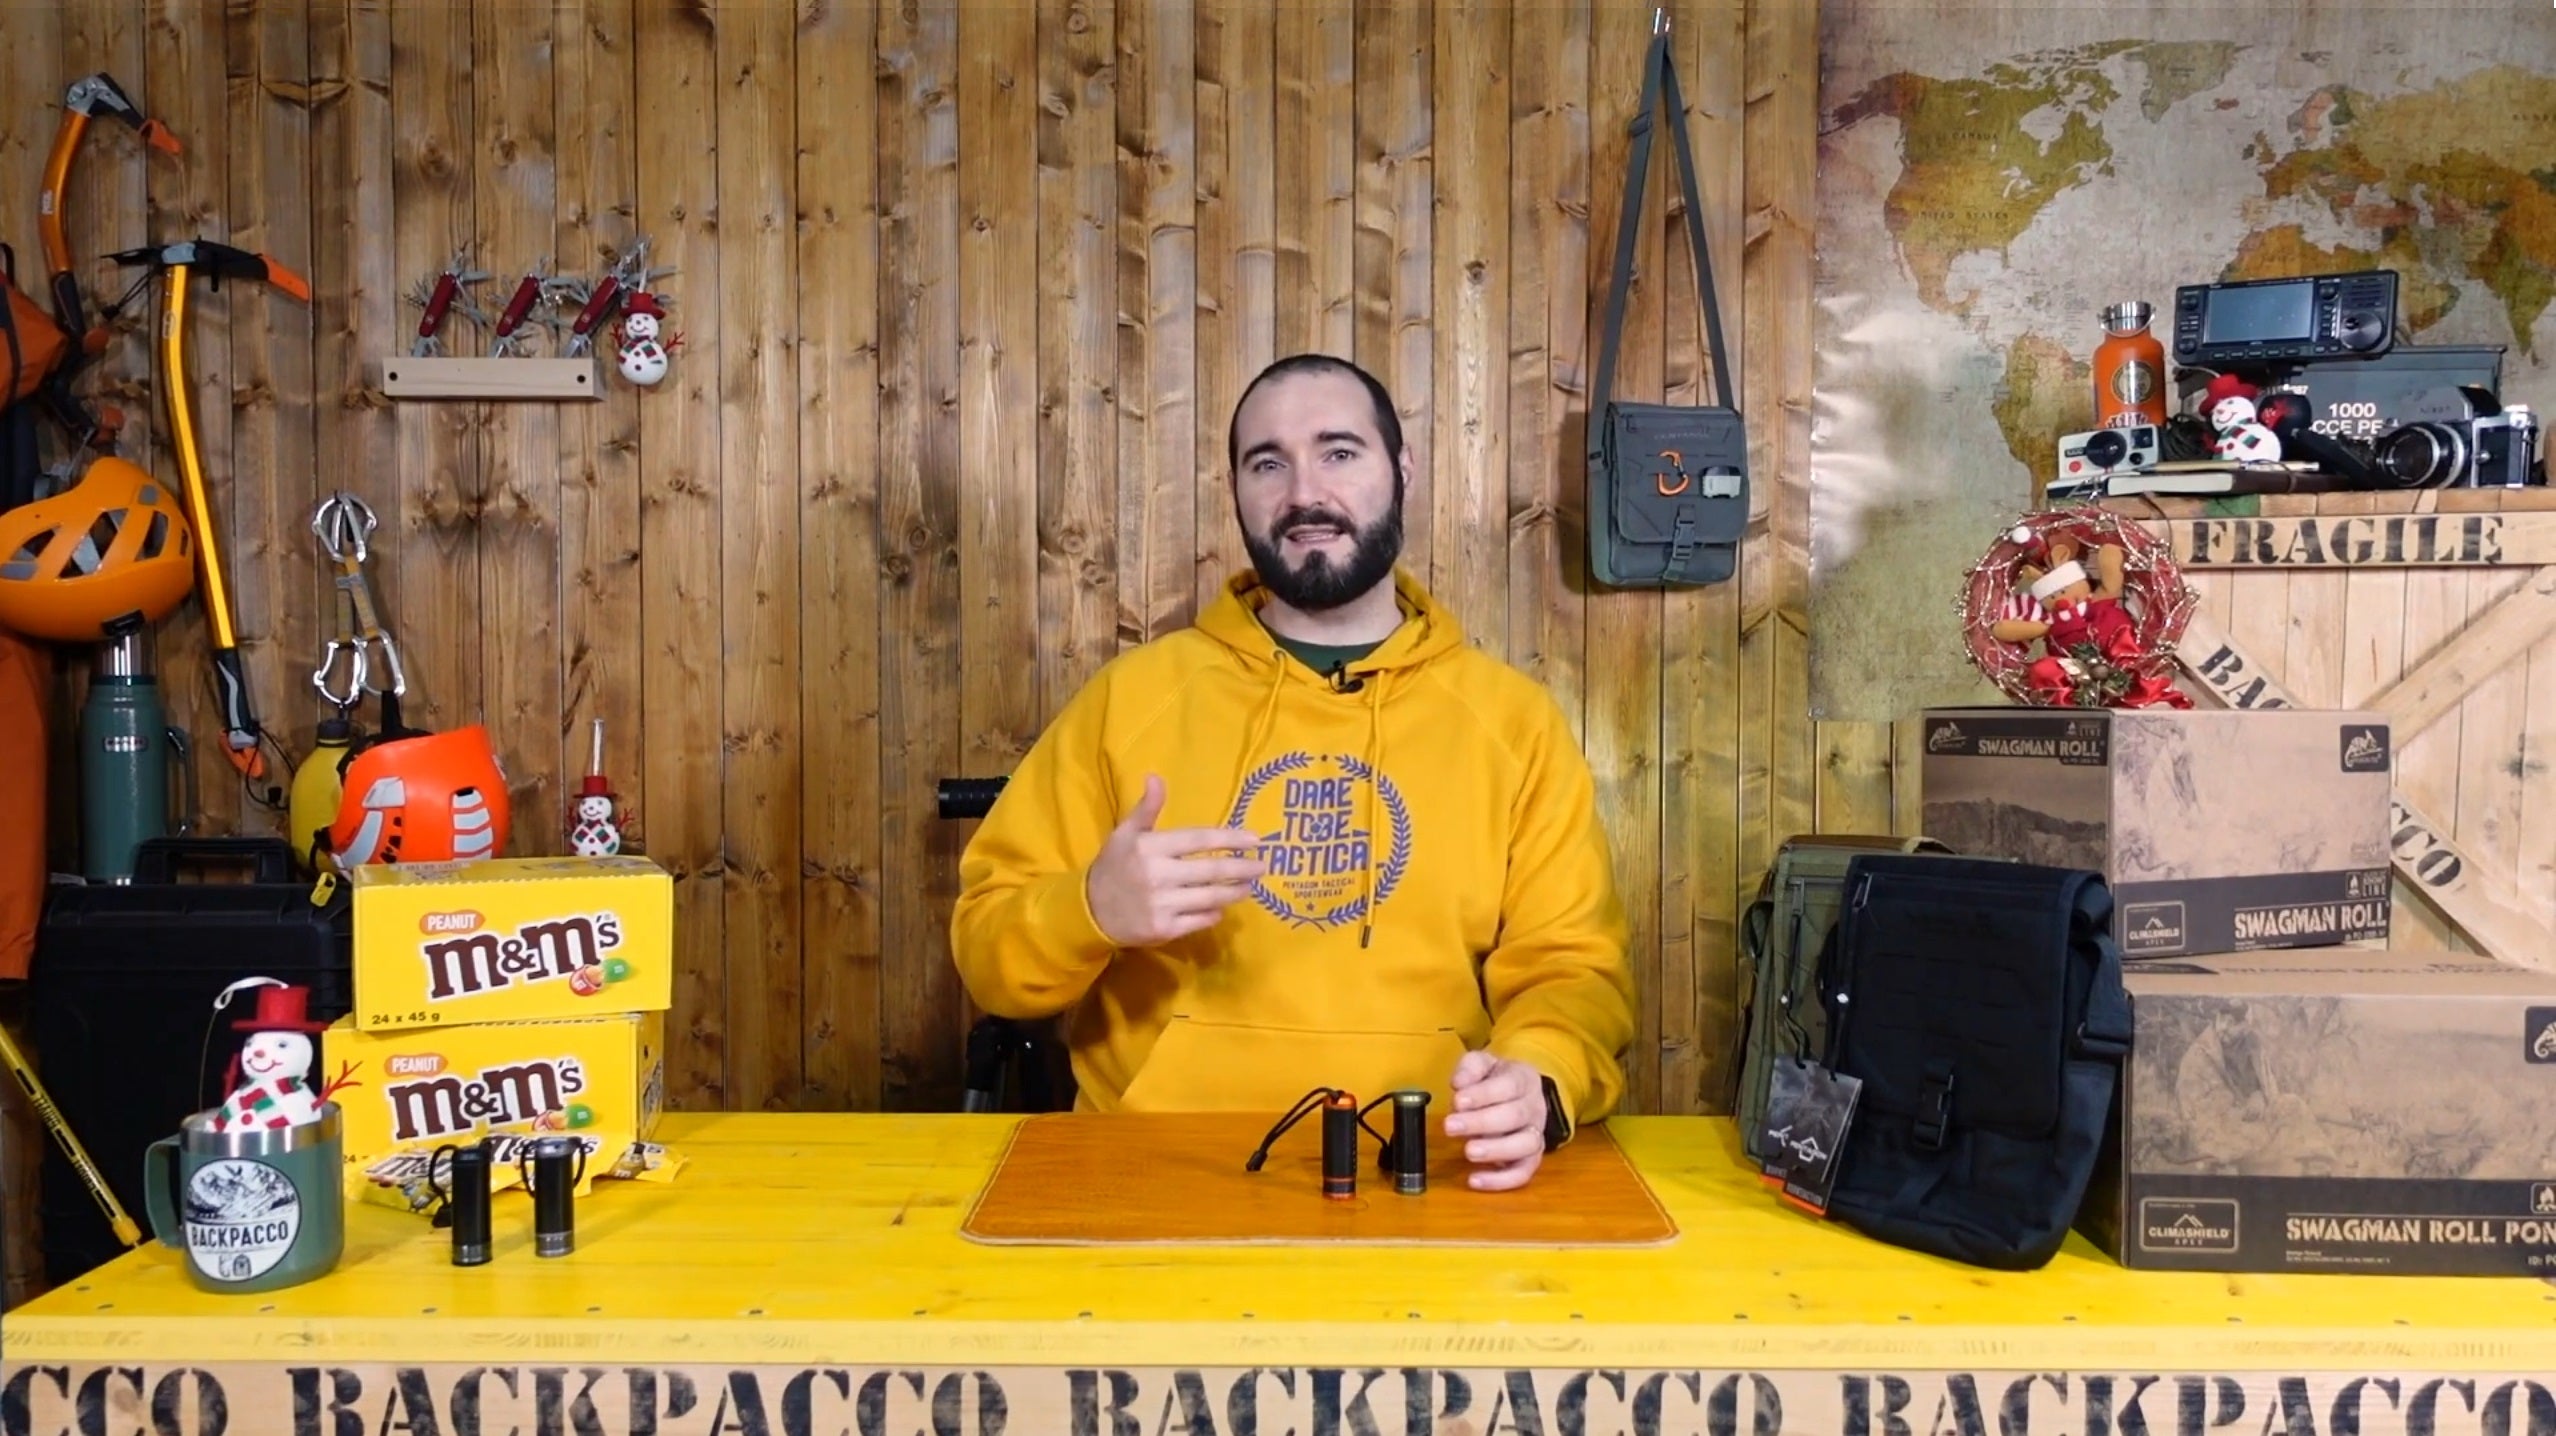 copertina del video dove paolo di backpacco spiega il ripspool di exotac